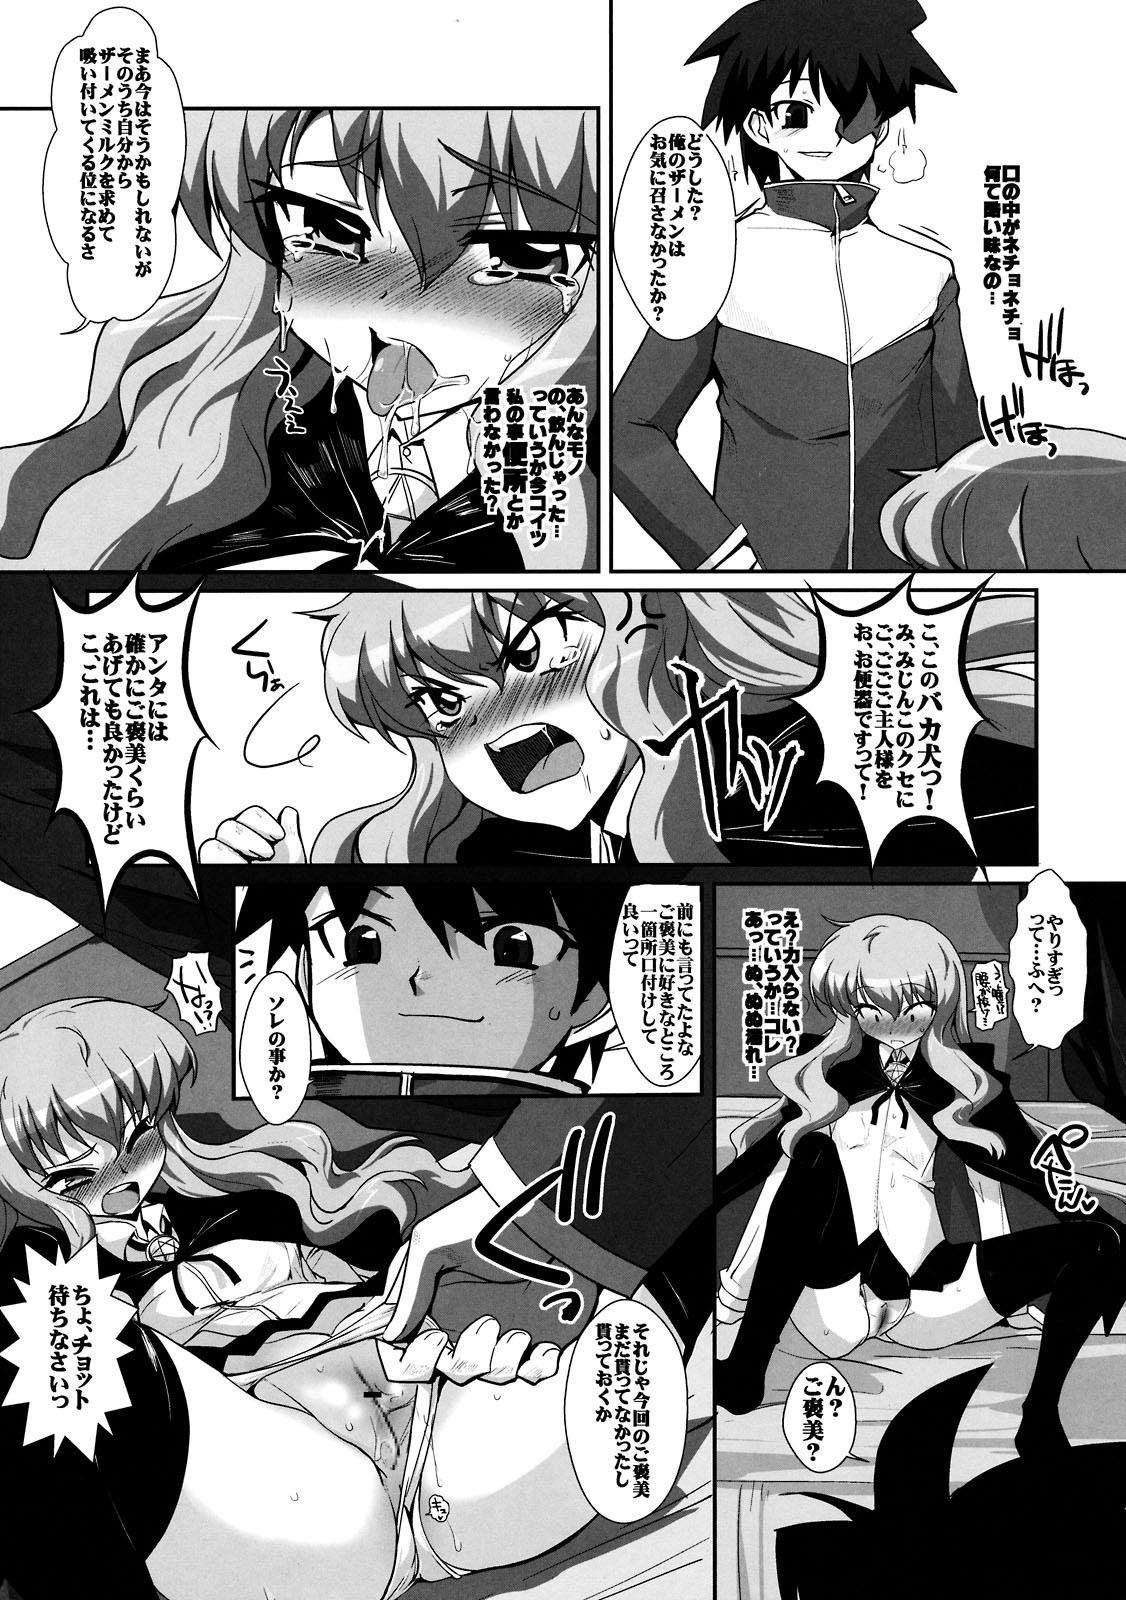 Blows Kouda no Goshujin-sama - Zero no tsukaima Dirty Talk - Page 11